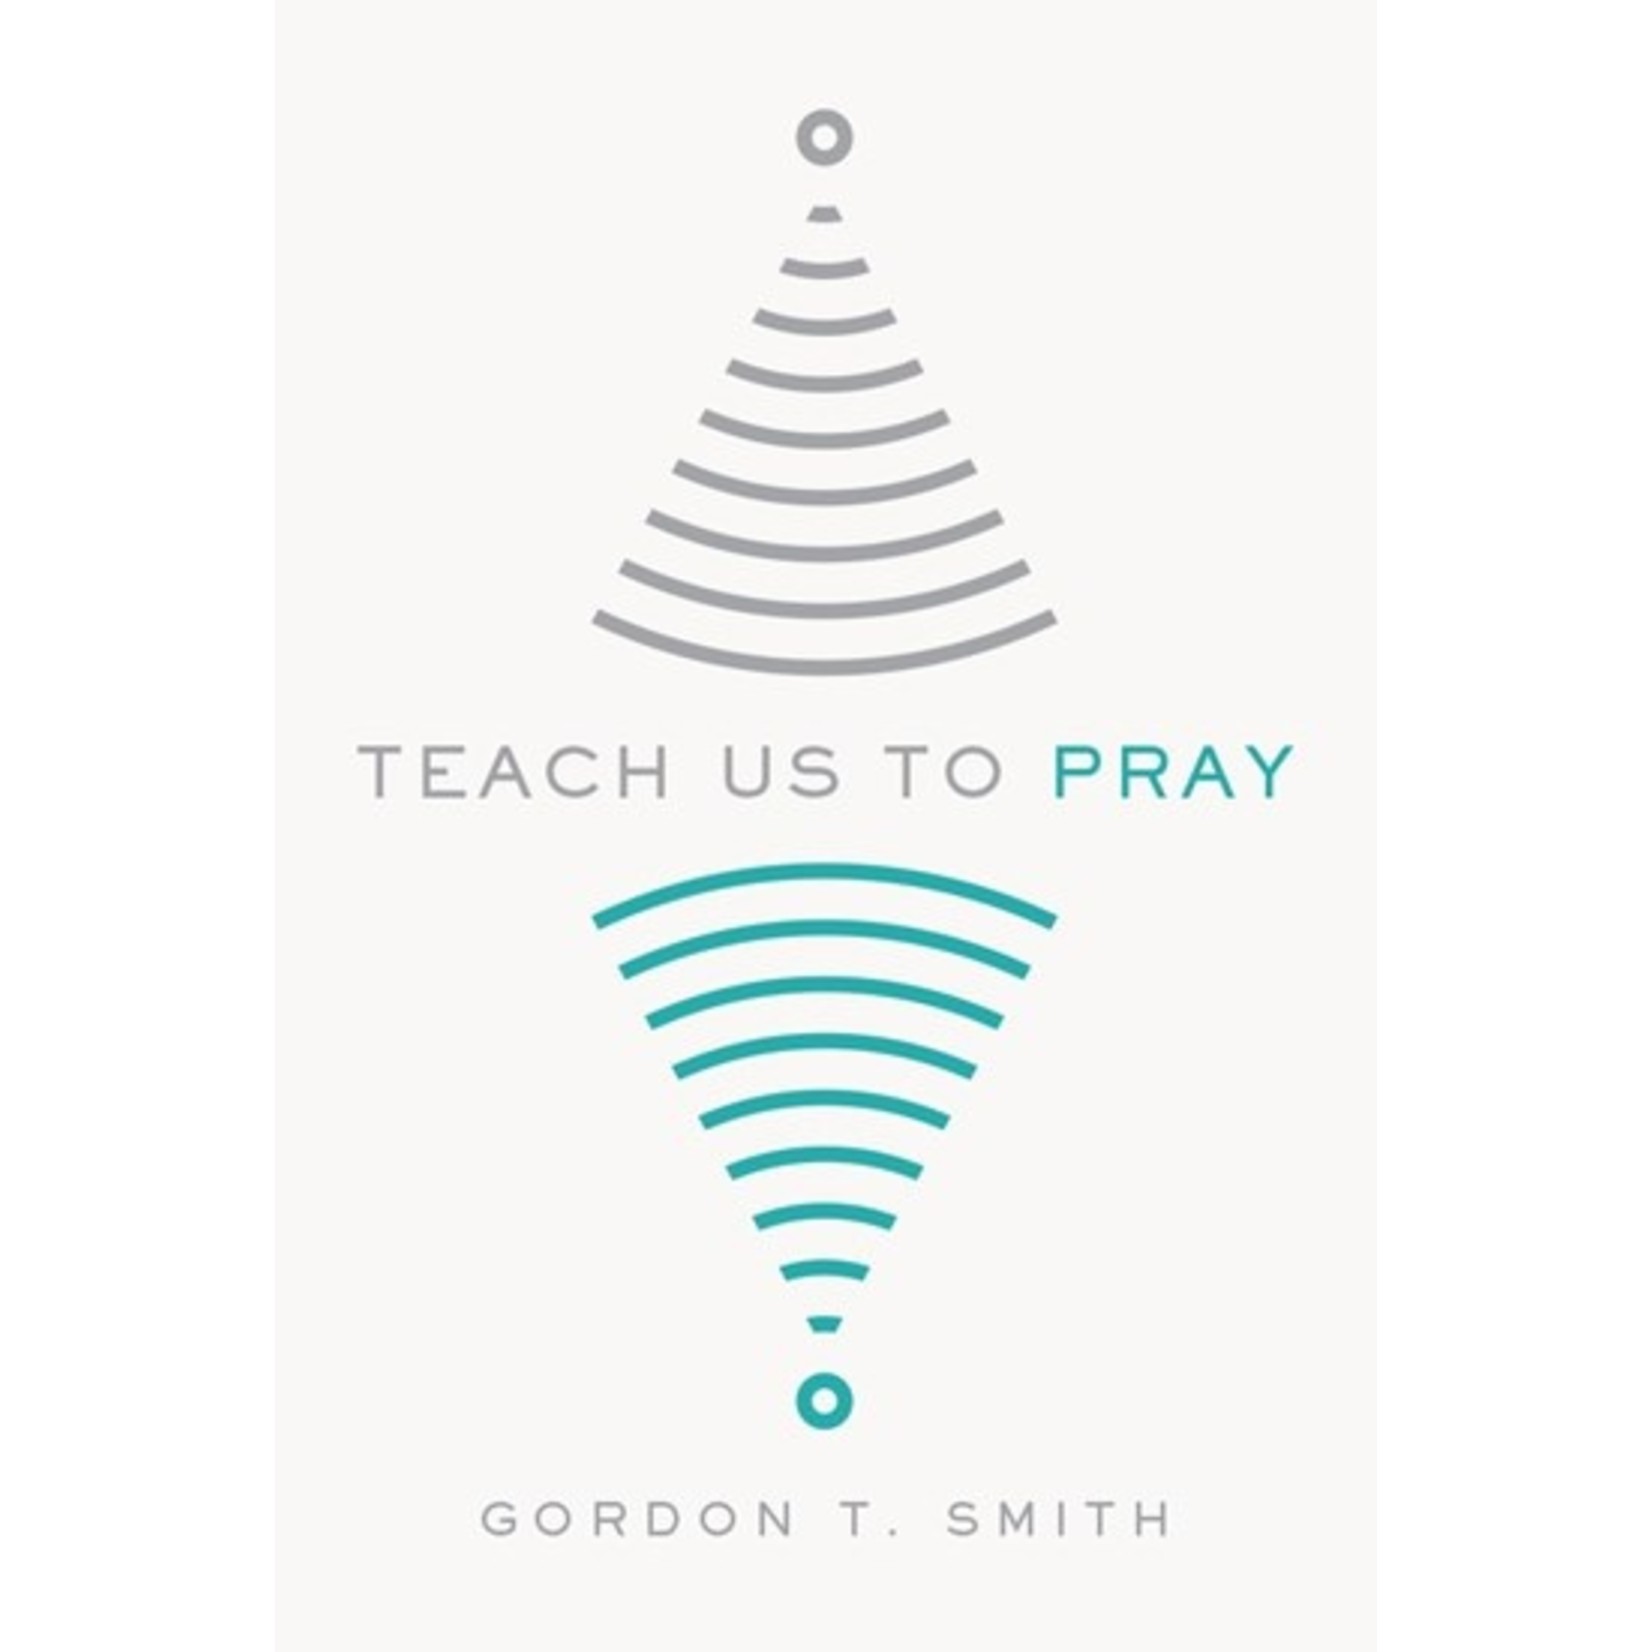 Teach Us to Pray - Gordon T. Smith